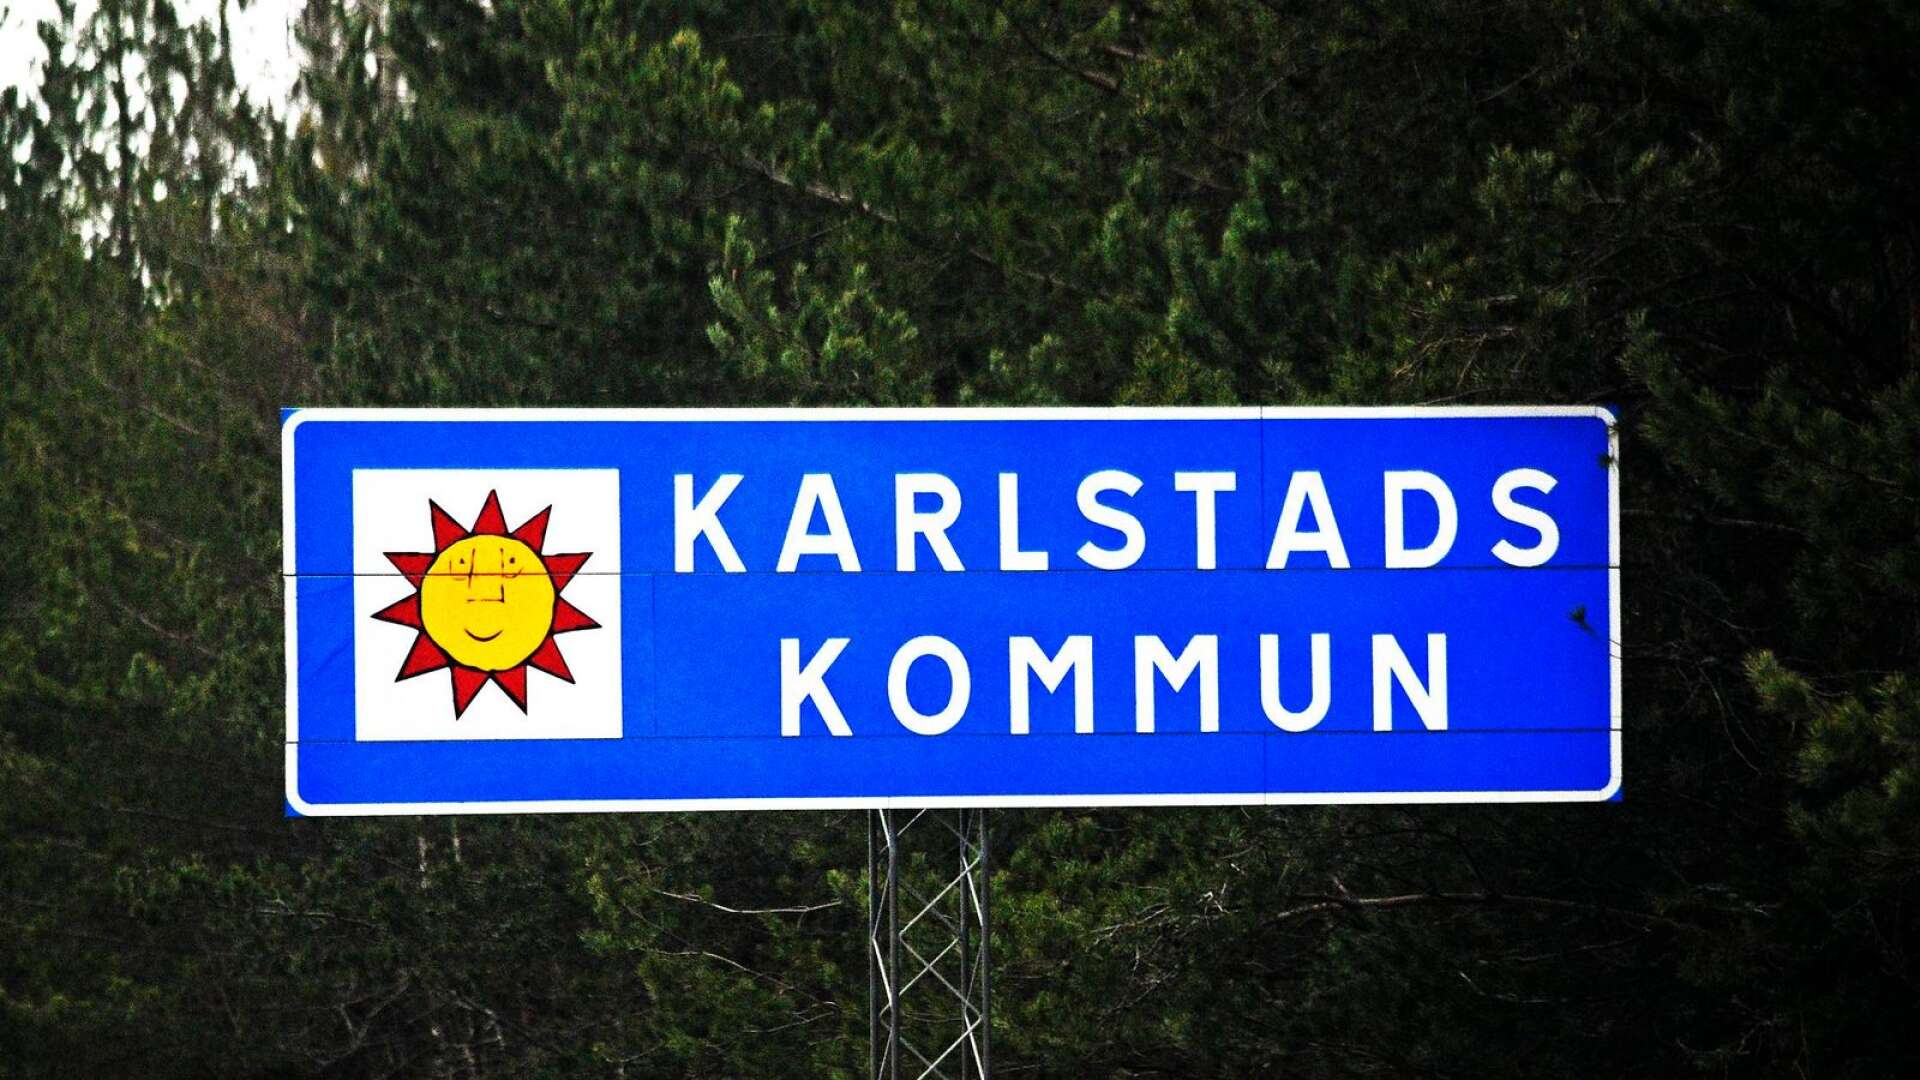 Karlstads kommun ville höja tomträttsavgälden från 16 600 till 43 500 för Sjöstad Garageförening - som sa tvärt nej. Efter process och domstolsbeslut blev det en mycket lindrigare höjning.